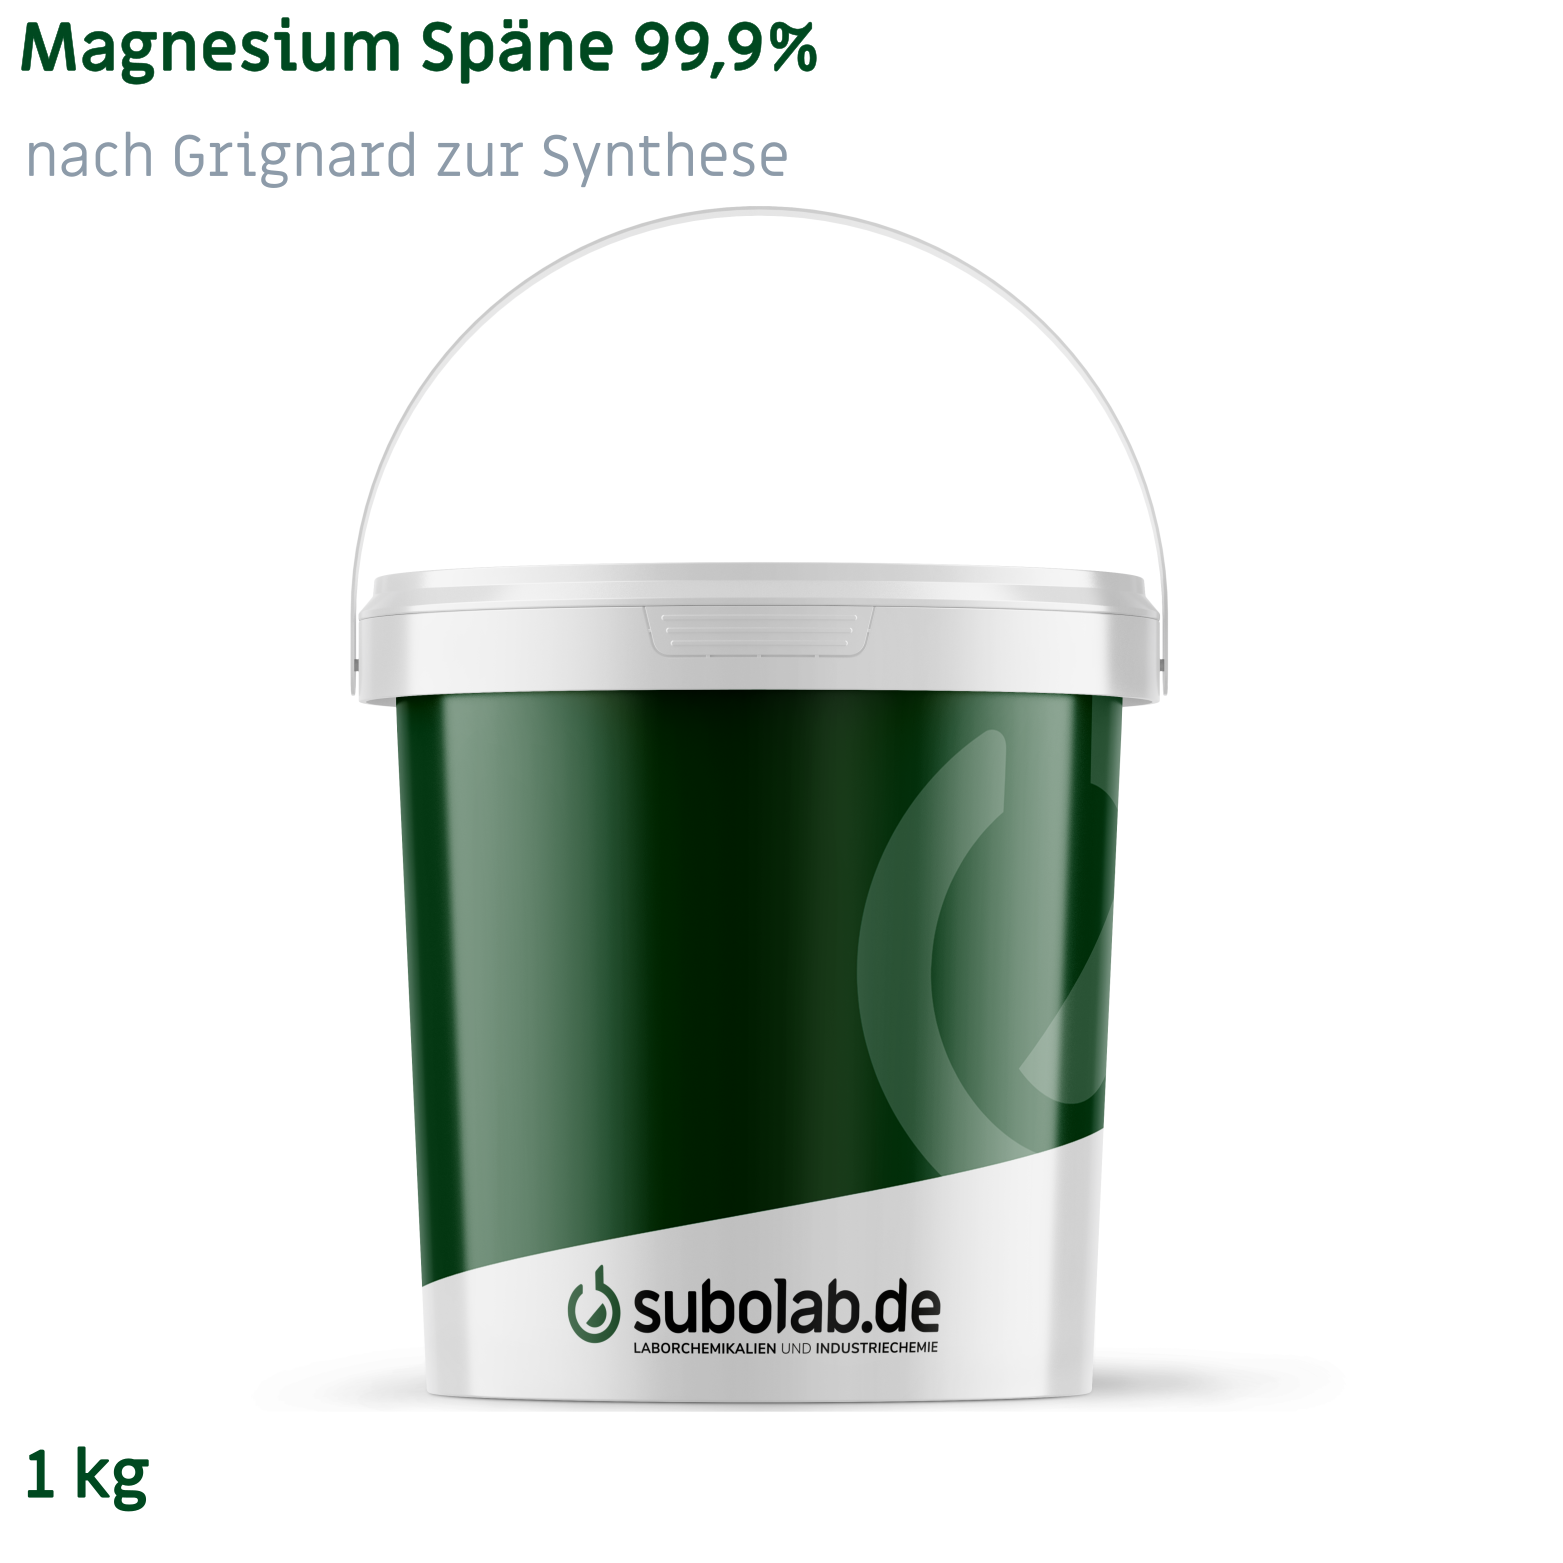 Bild von Magnesium Späne 99,9% nach Grignard zur Synthese (1 kg)